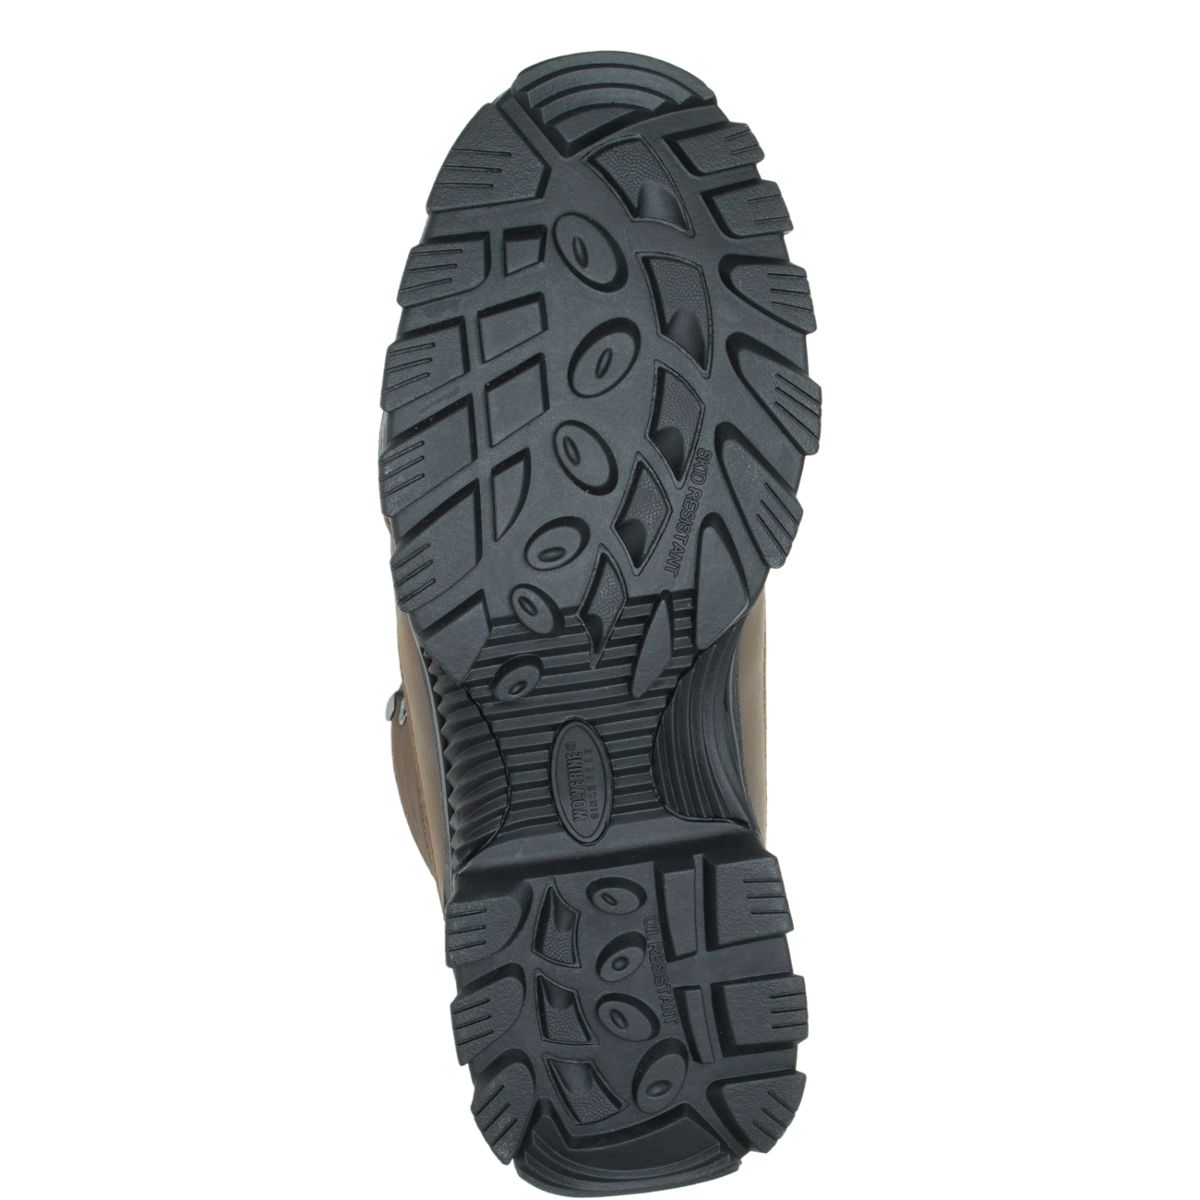 Spencer Waterproof Hiking Boot, Brown/Black, dynamic 4